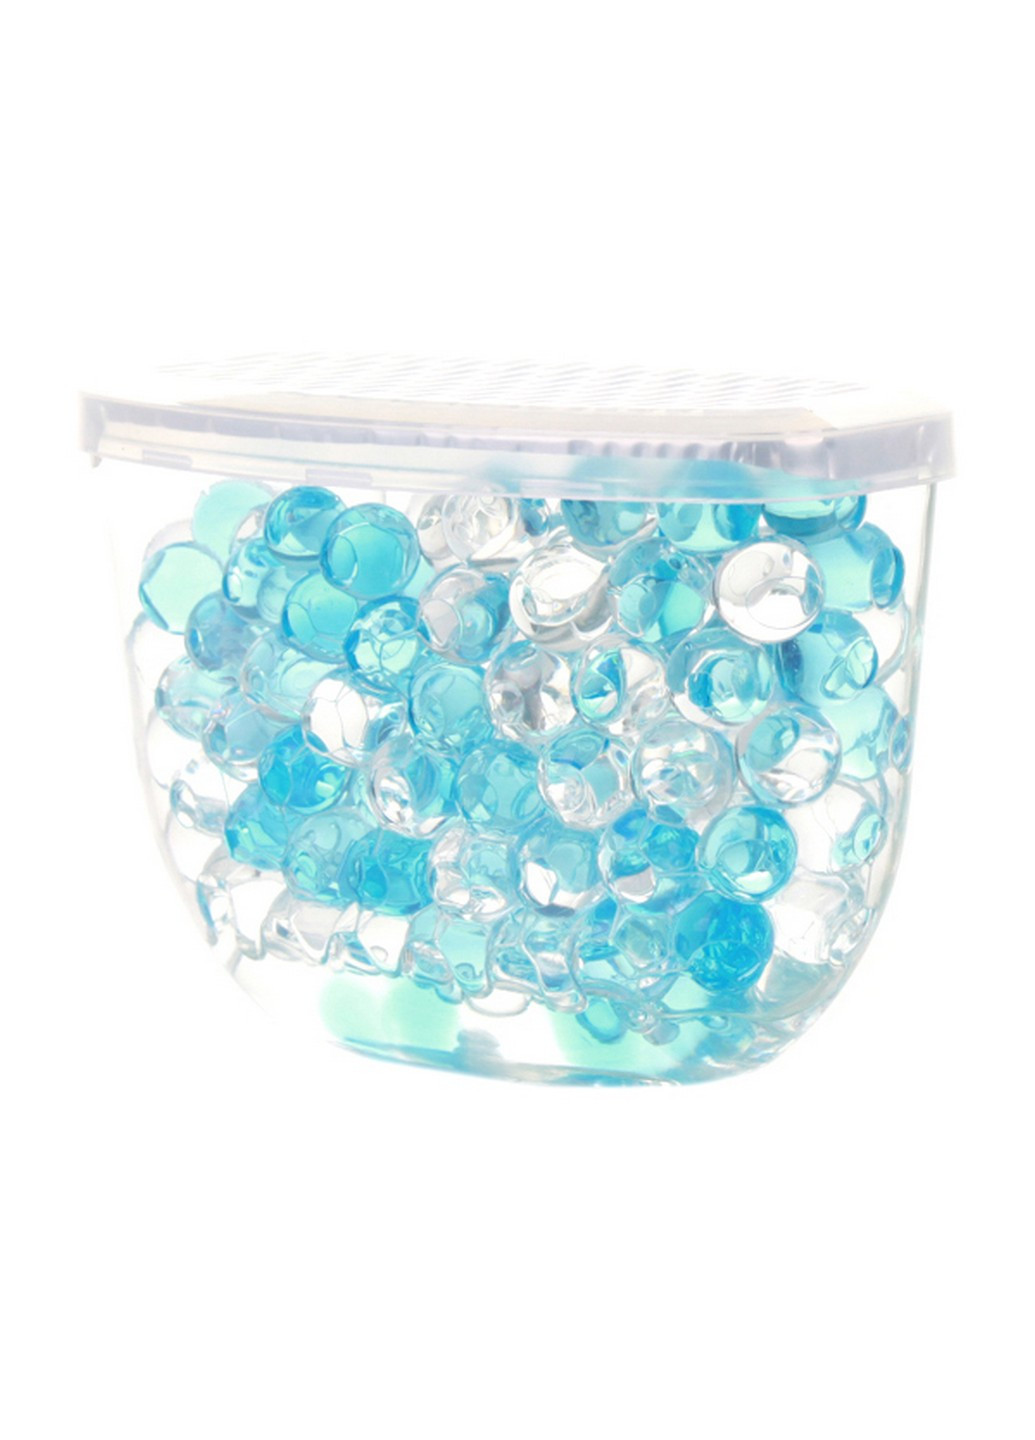 Освіжувач для повітря crystal beads океан (150 г) Ozone (264829877)